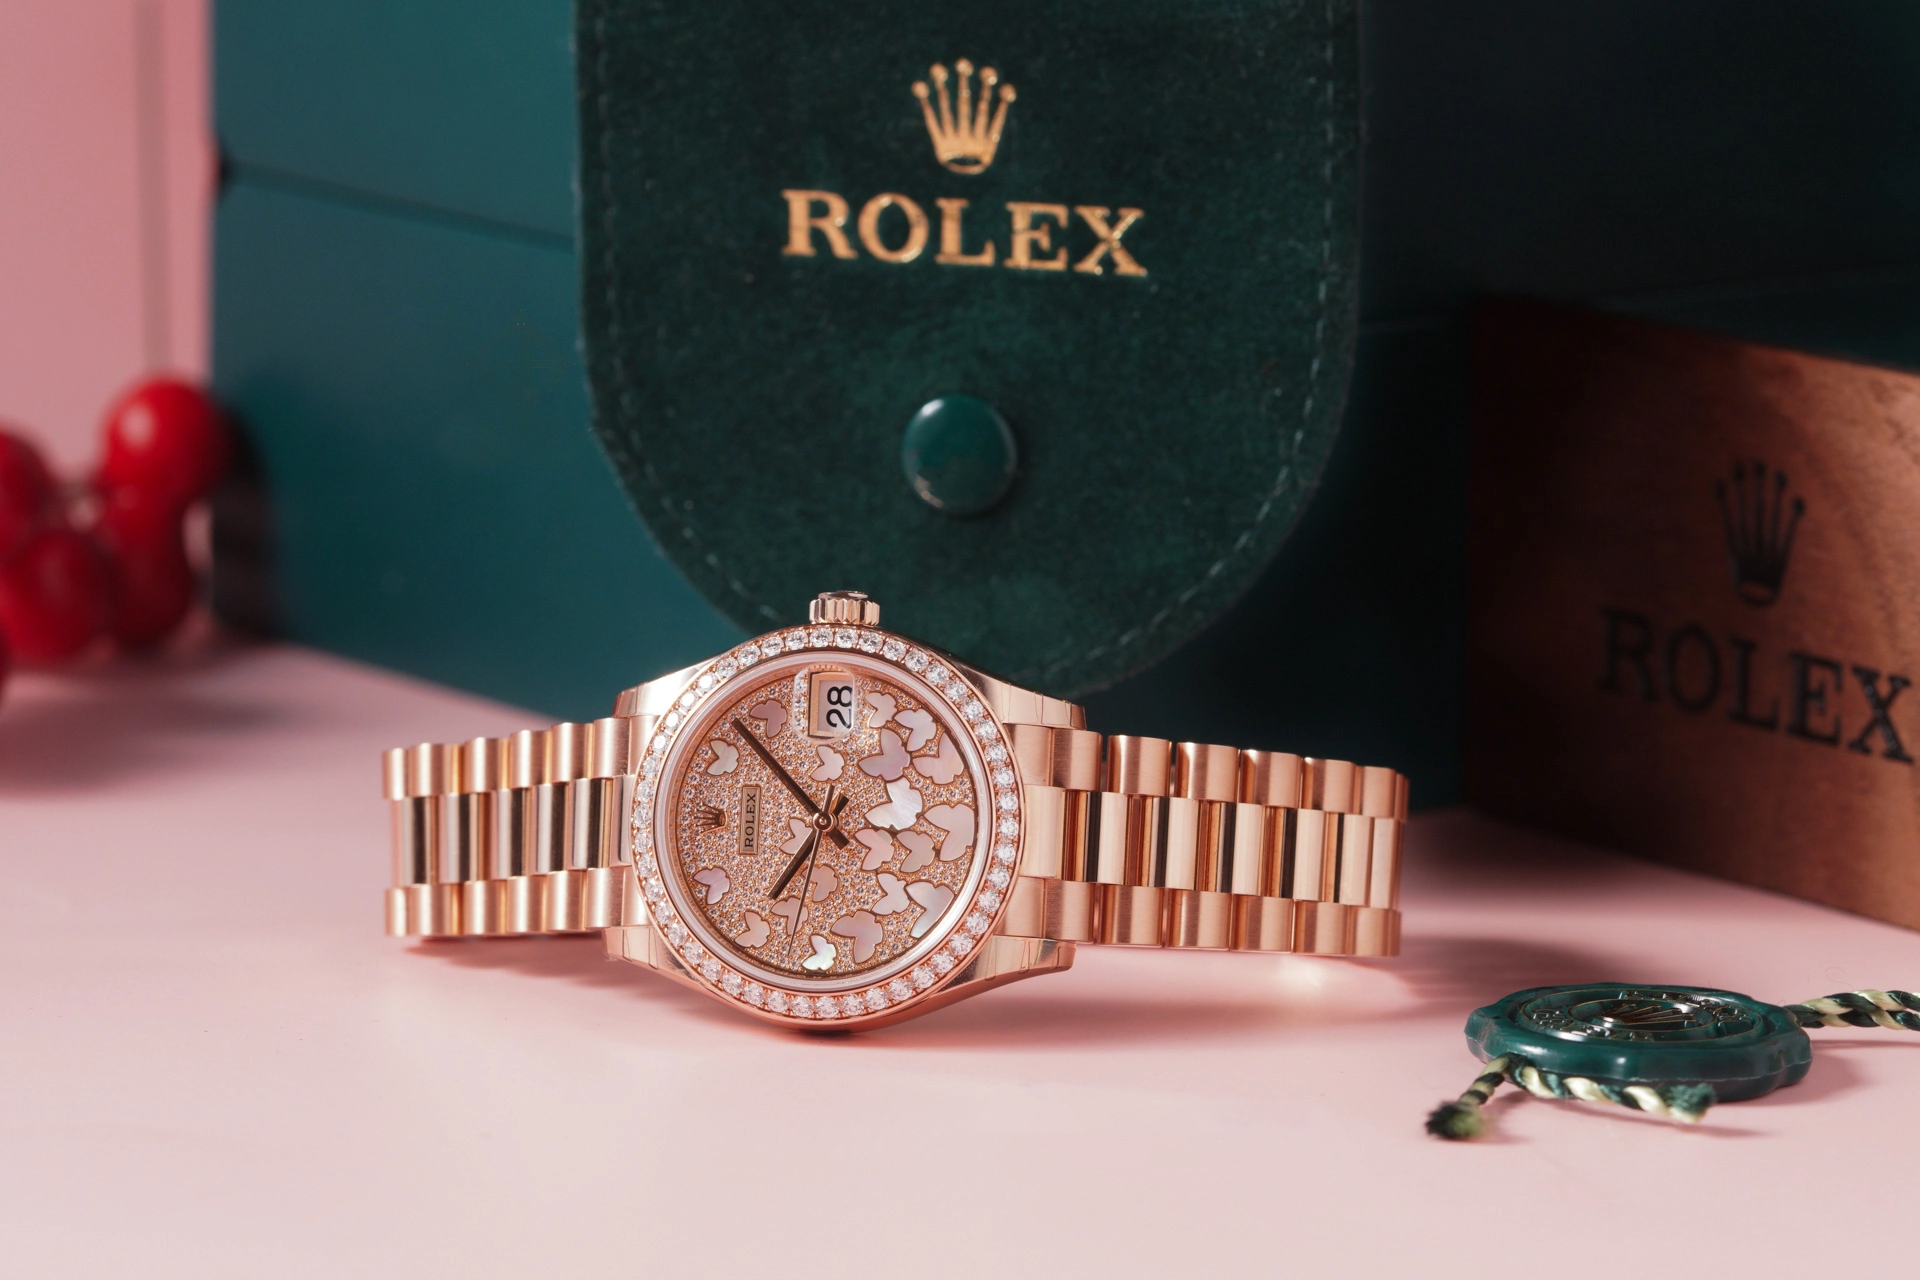 Thay dây đeo kim loại cho đồng hồ Rolex - Service Watch